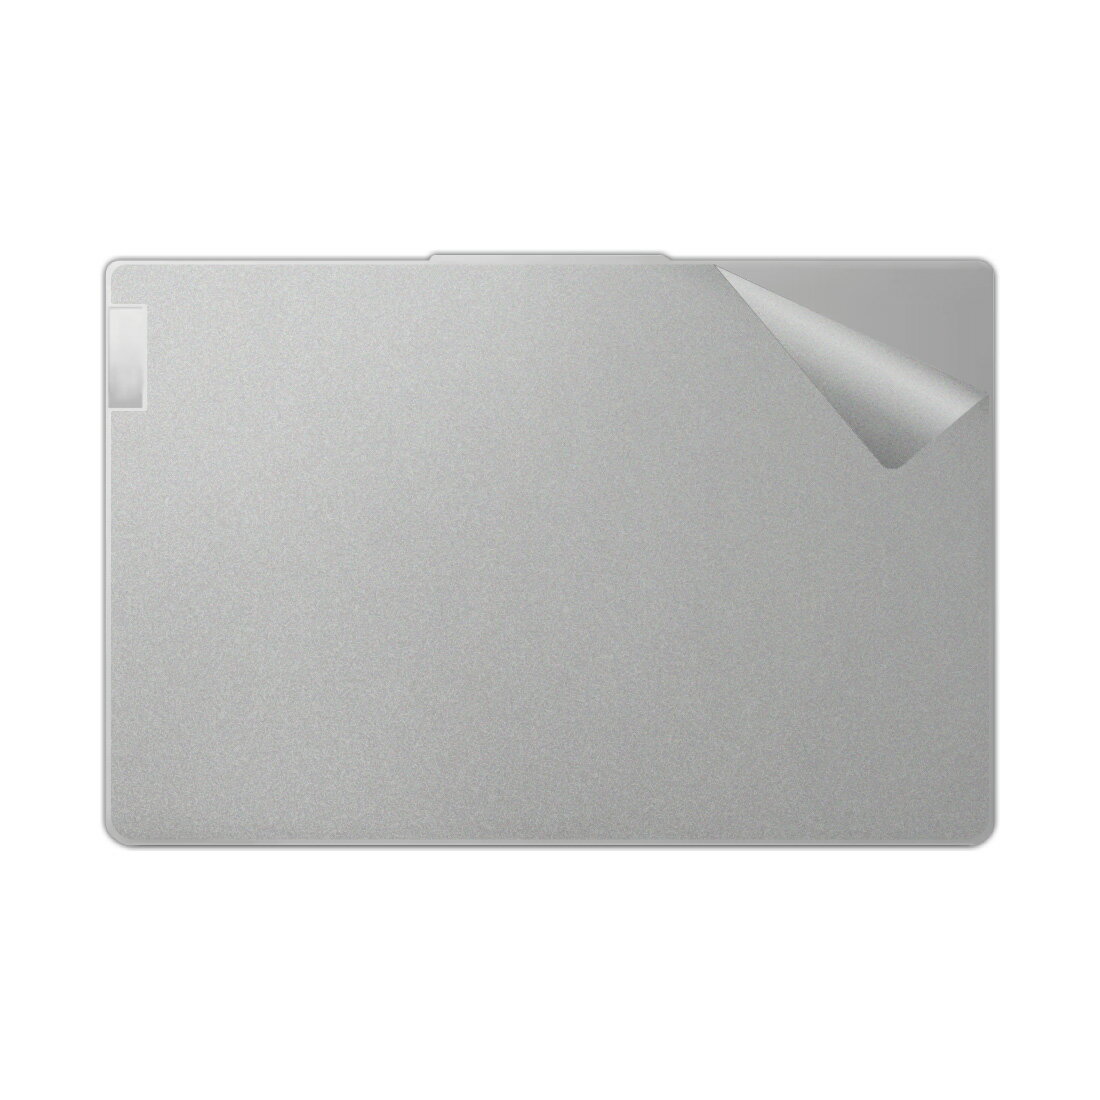 スキンシール Lenovo IdeaPad Slim 5 Light Gen 8 14型 【透明・すりガラス調】 日本製 自社製造直販